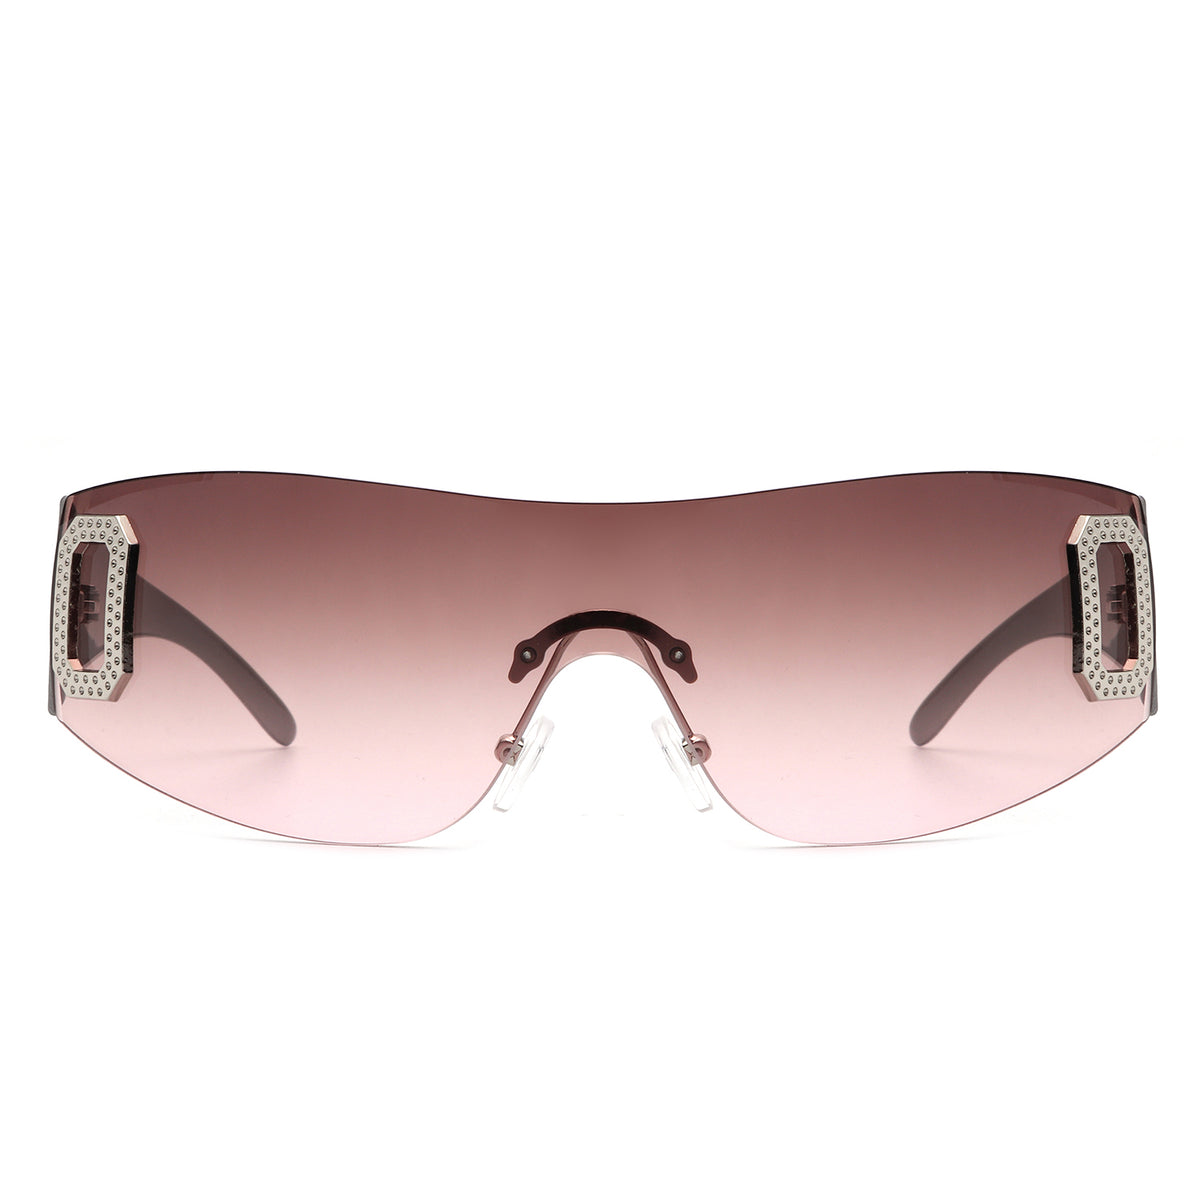 Black Celine Style Modern Visor Sunglasses- Order Wholesale